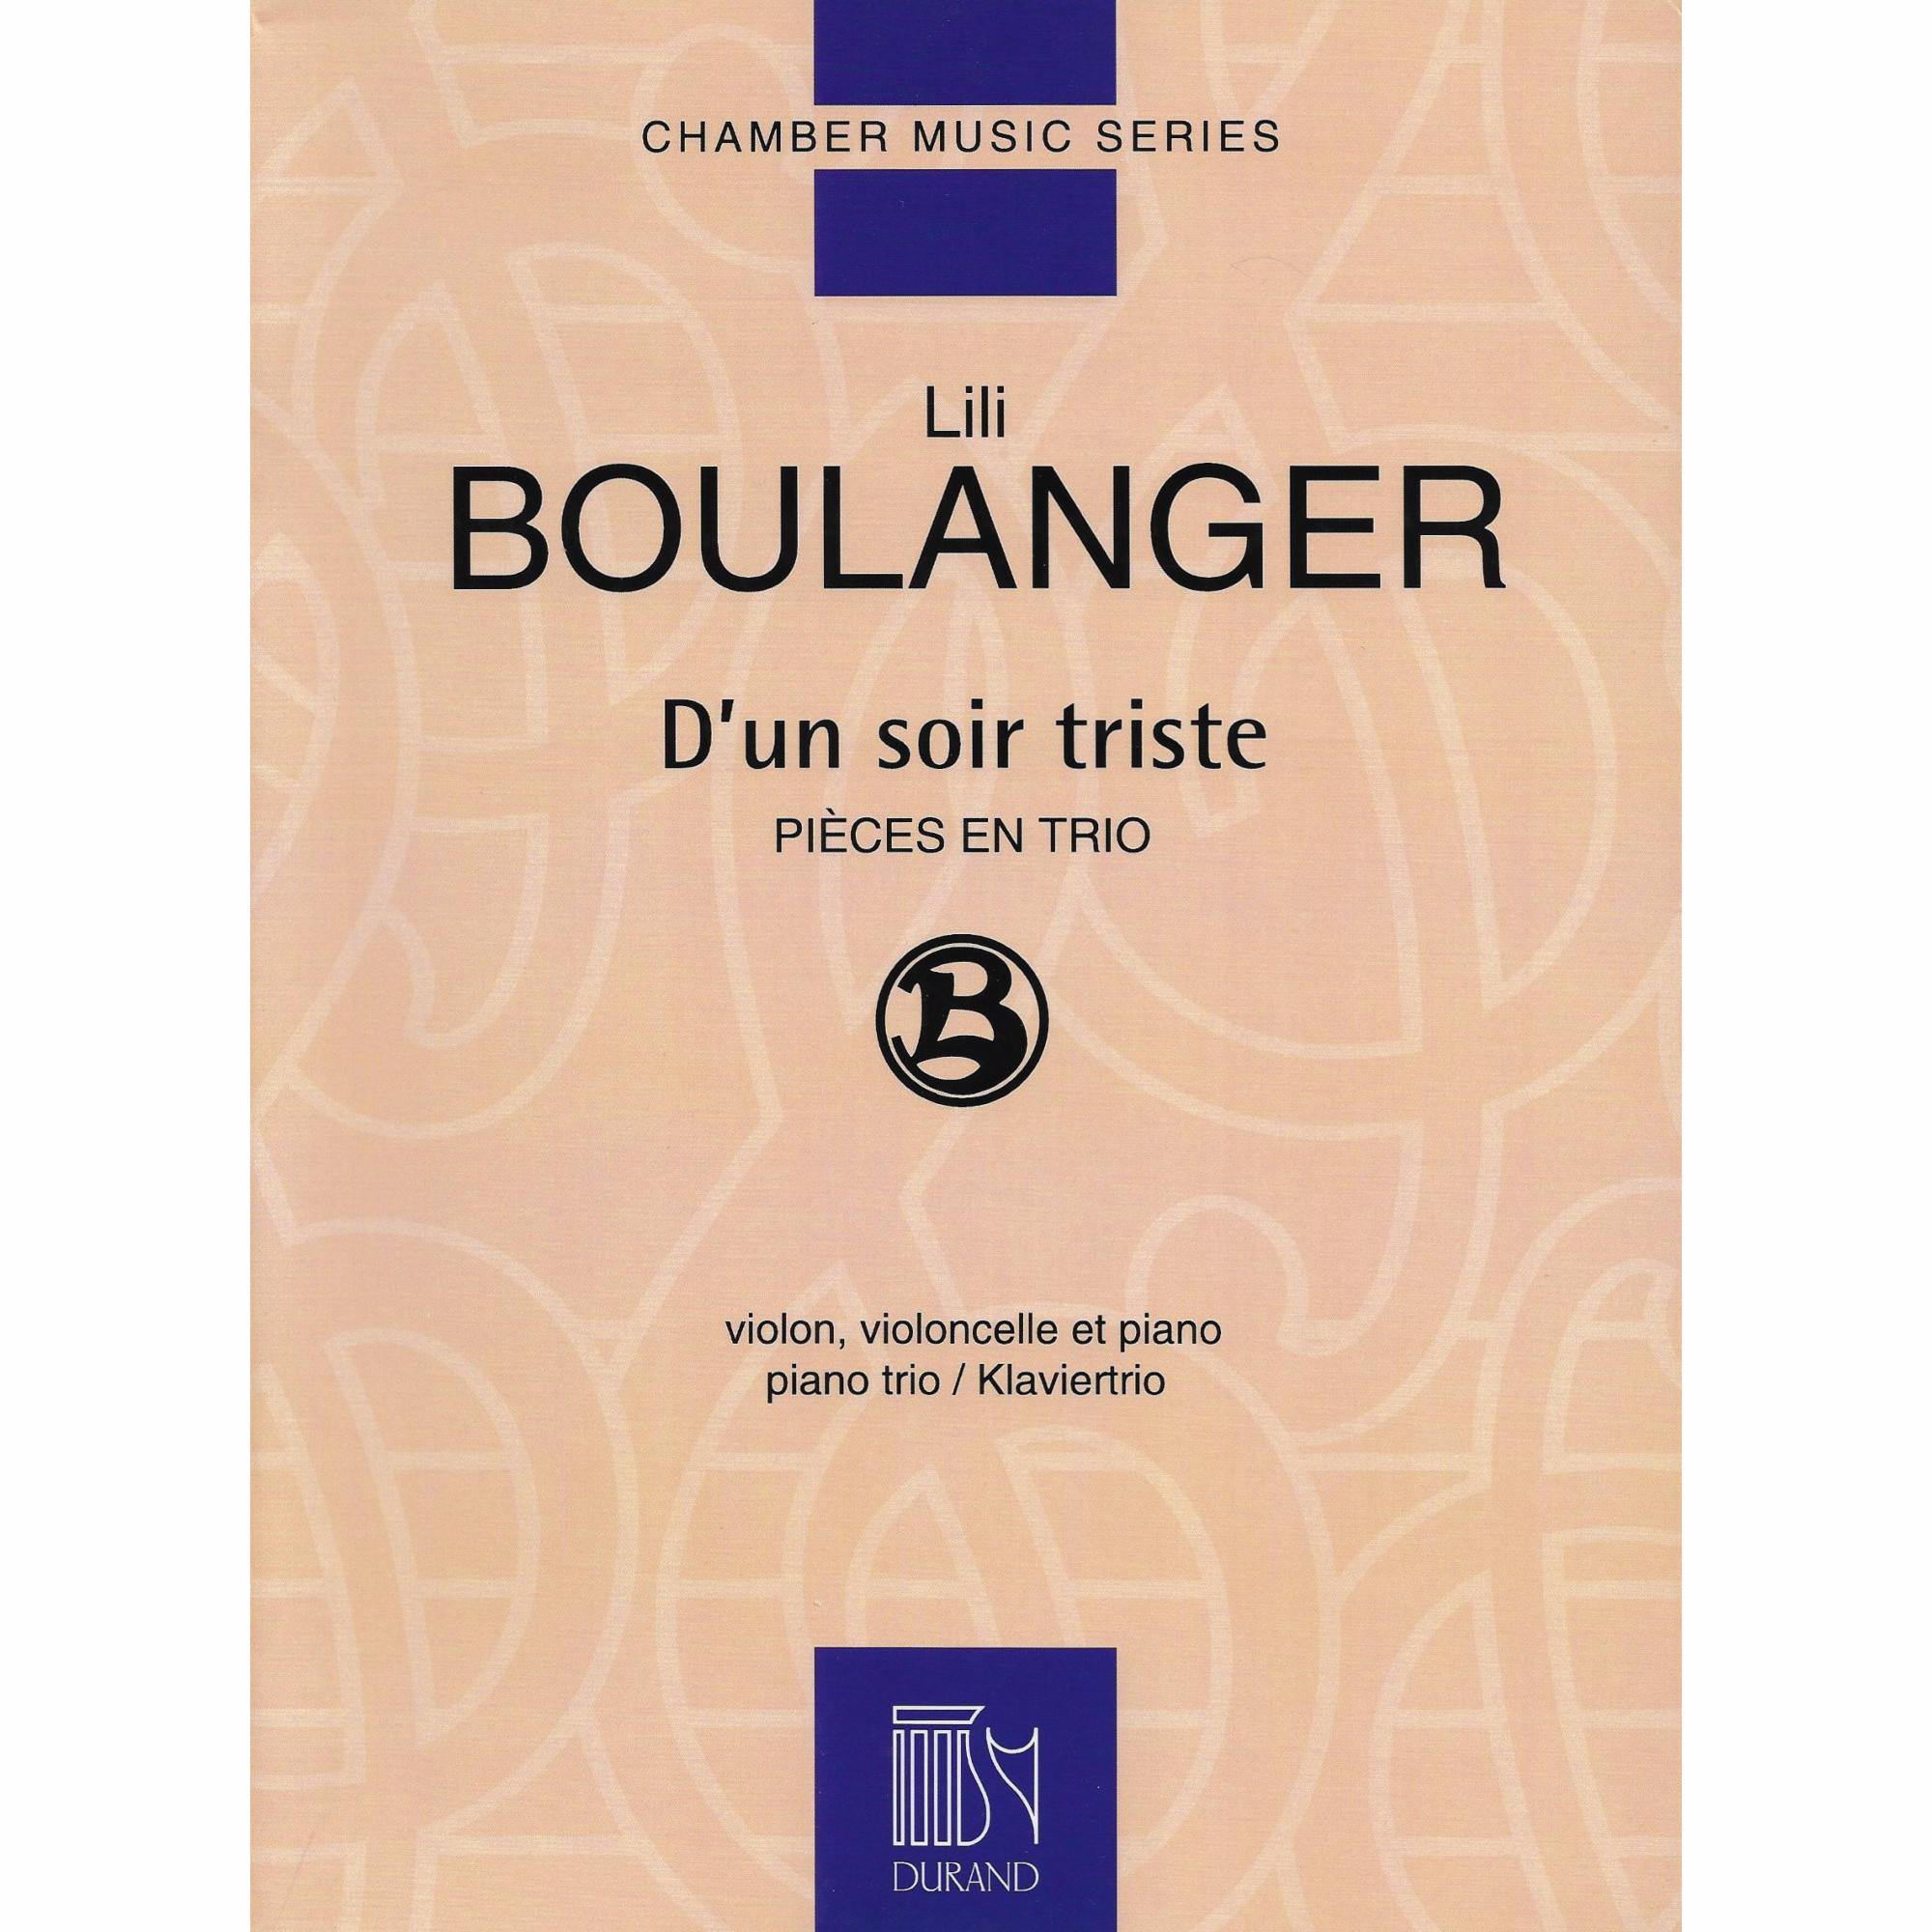 Boulanger -- D'un soir triste for Piano Trio